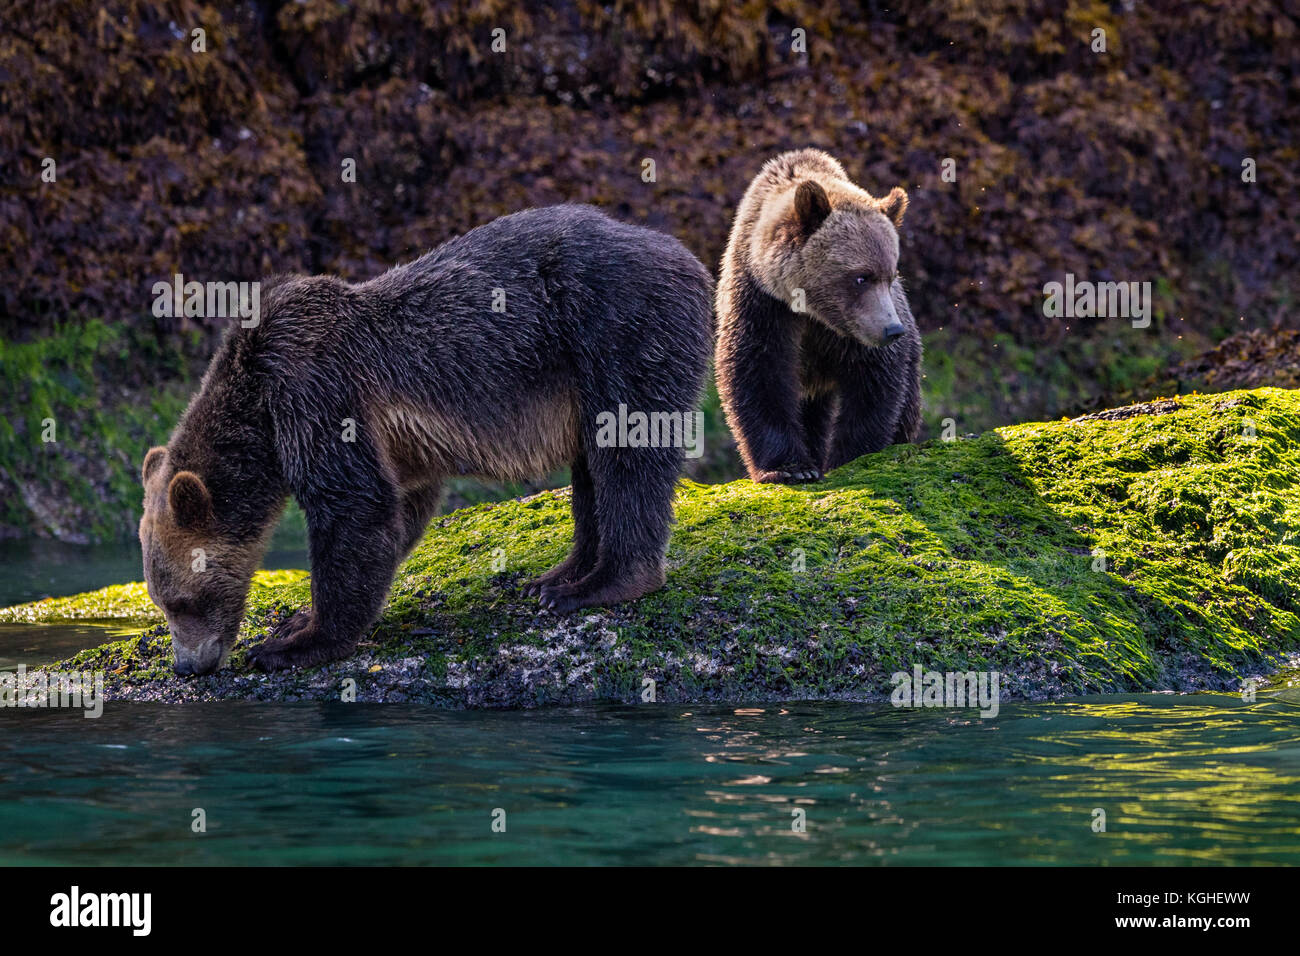 Orso grizzly mom con cub rovistando lungo la bassa marea linea vicino all'acqua, grande orso nella foresta pluviale, ingresso del cavaliere, British Columbia, Canada. Foto Stock